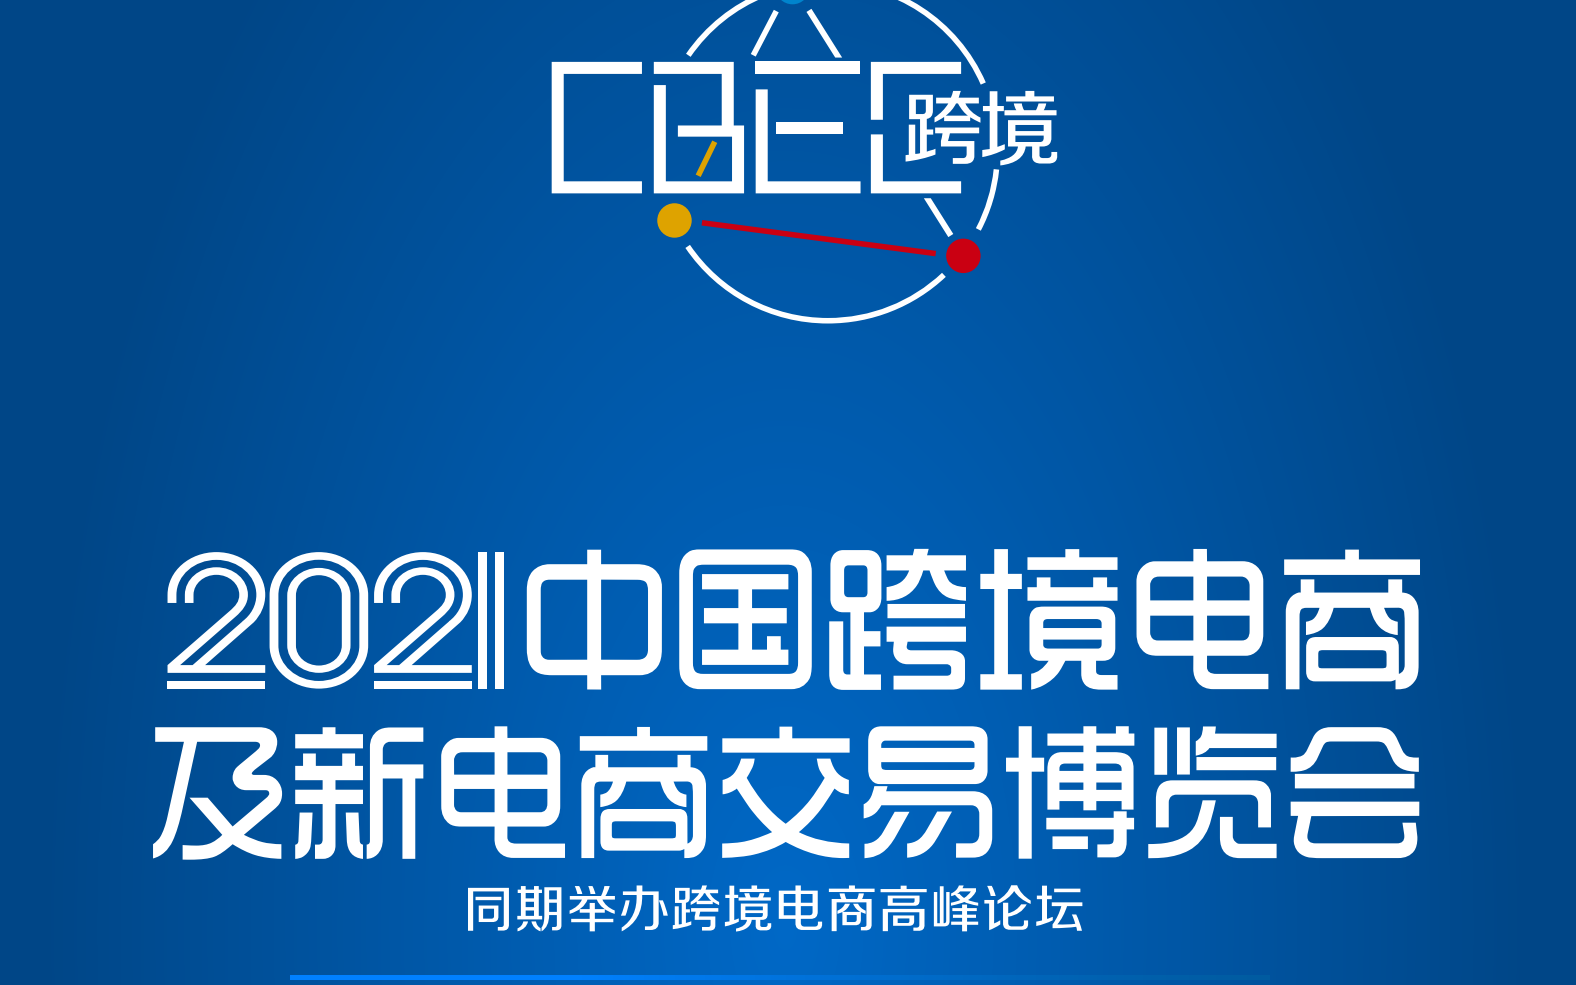 2021CBEC中国跨境电商及新电商交易博览会